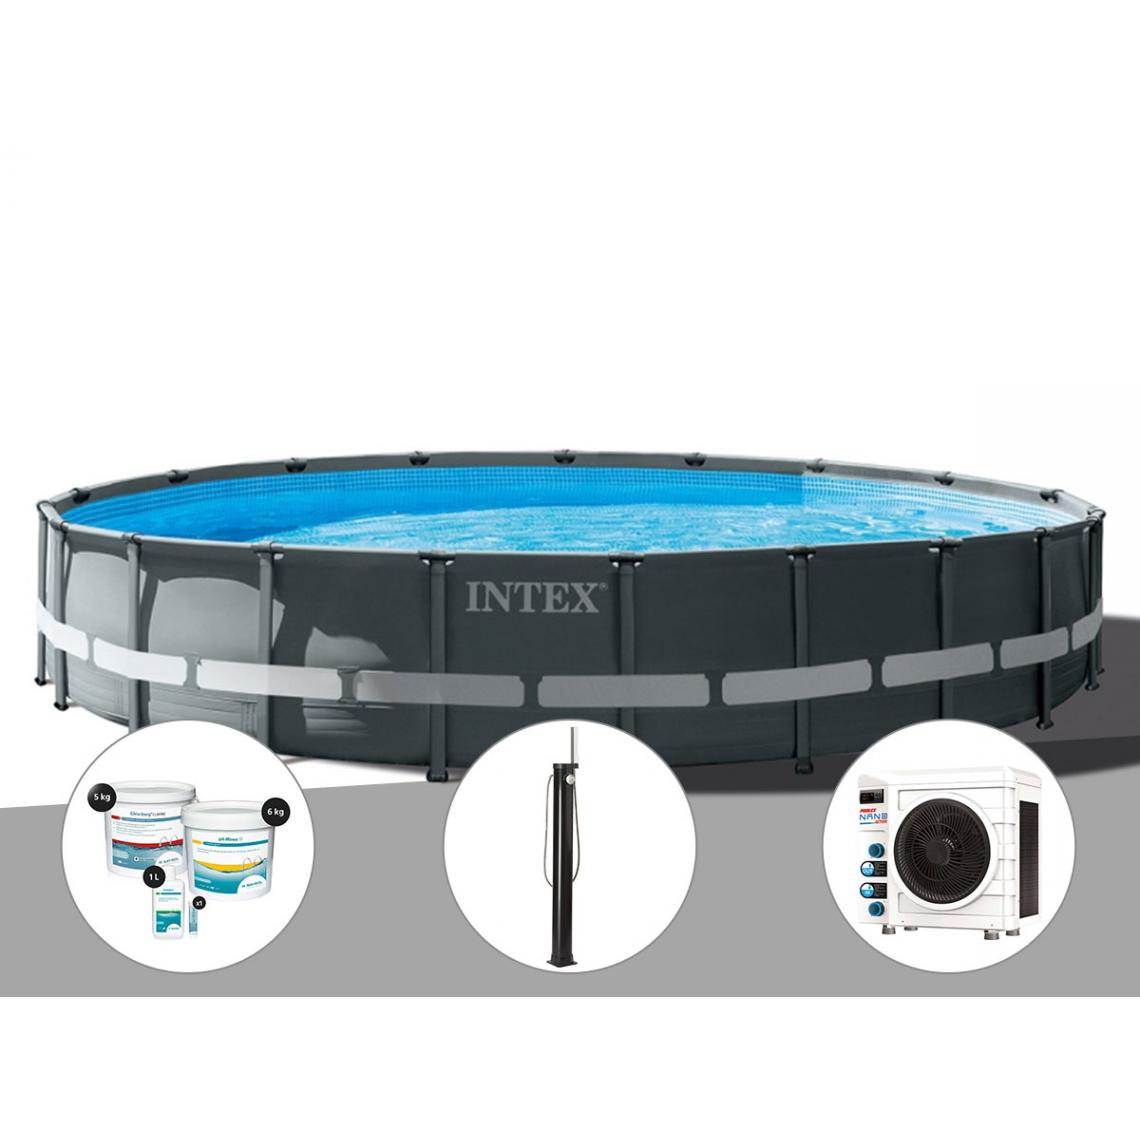 Intex - Kit piscine tubulaire Intex Ultra XTR Frame ronde 6,10 x 1,22 m + Kit de traitement au chlore + Douche solaire + Pompe à chaleur - Piscine Tubulaire